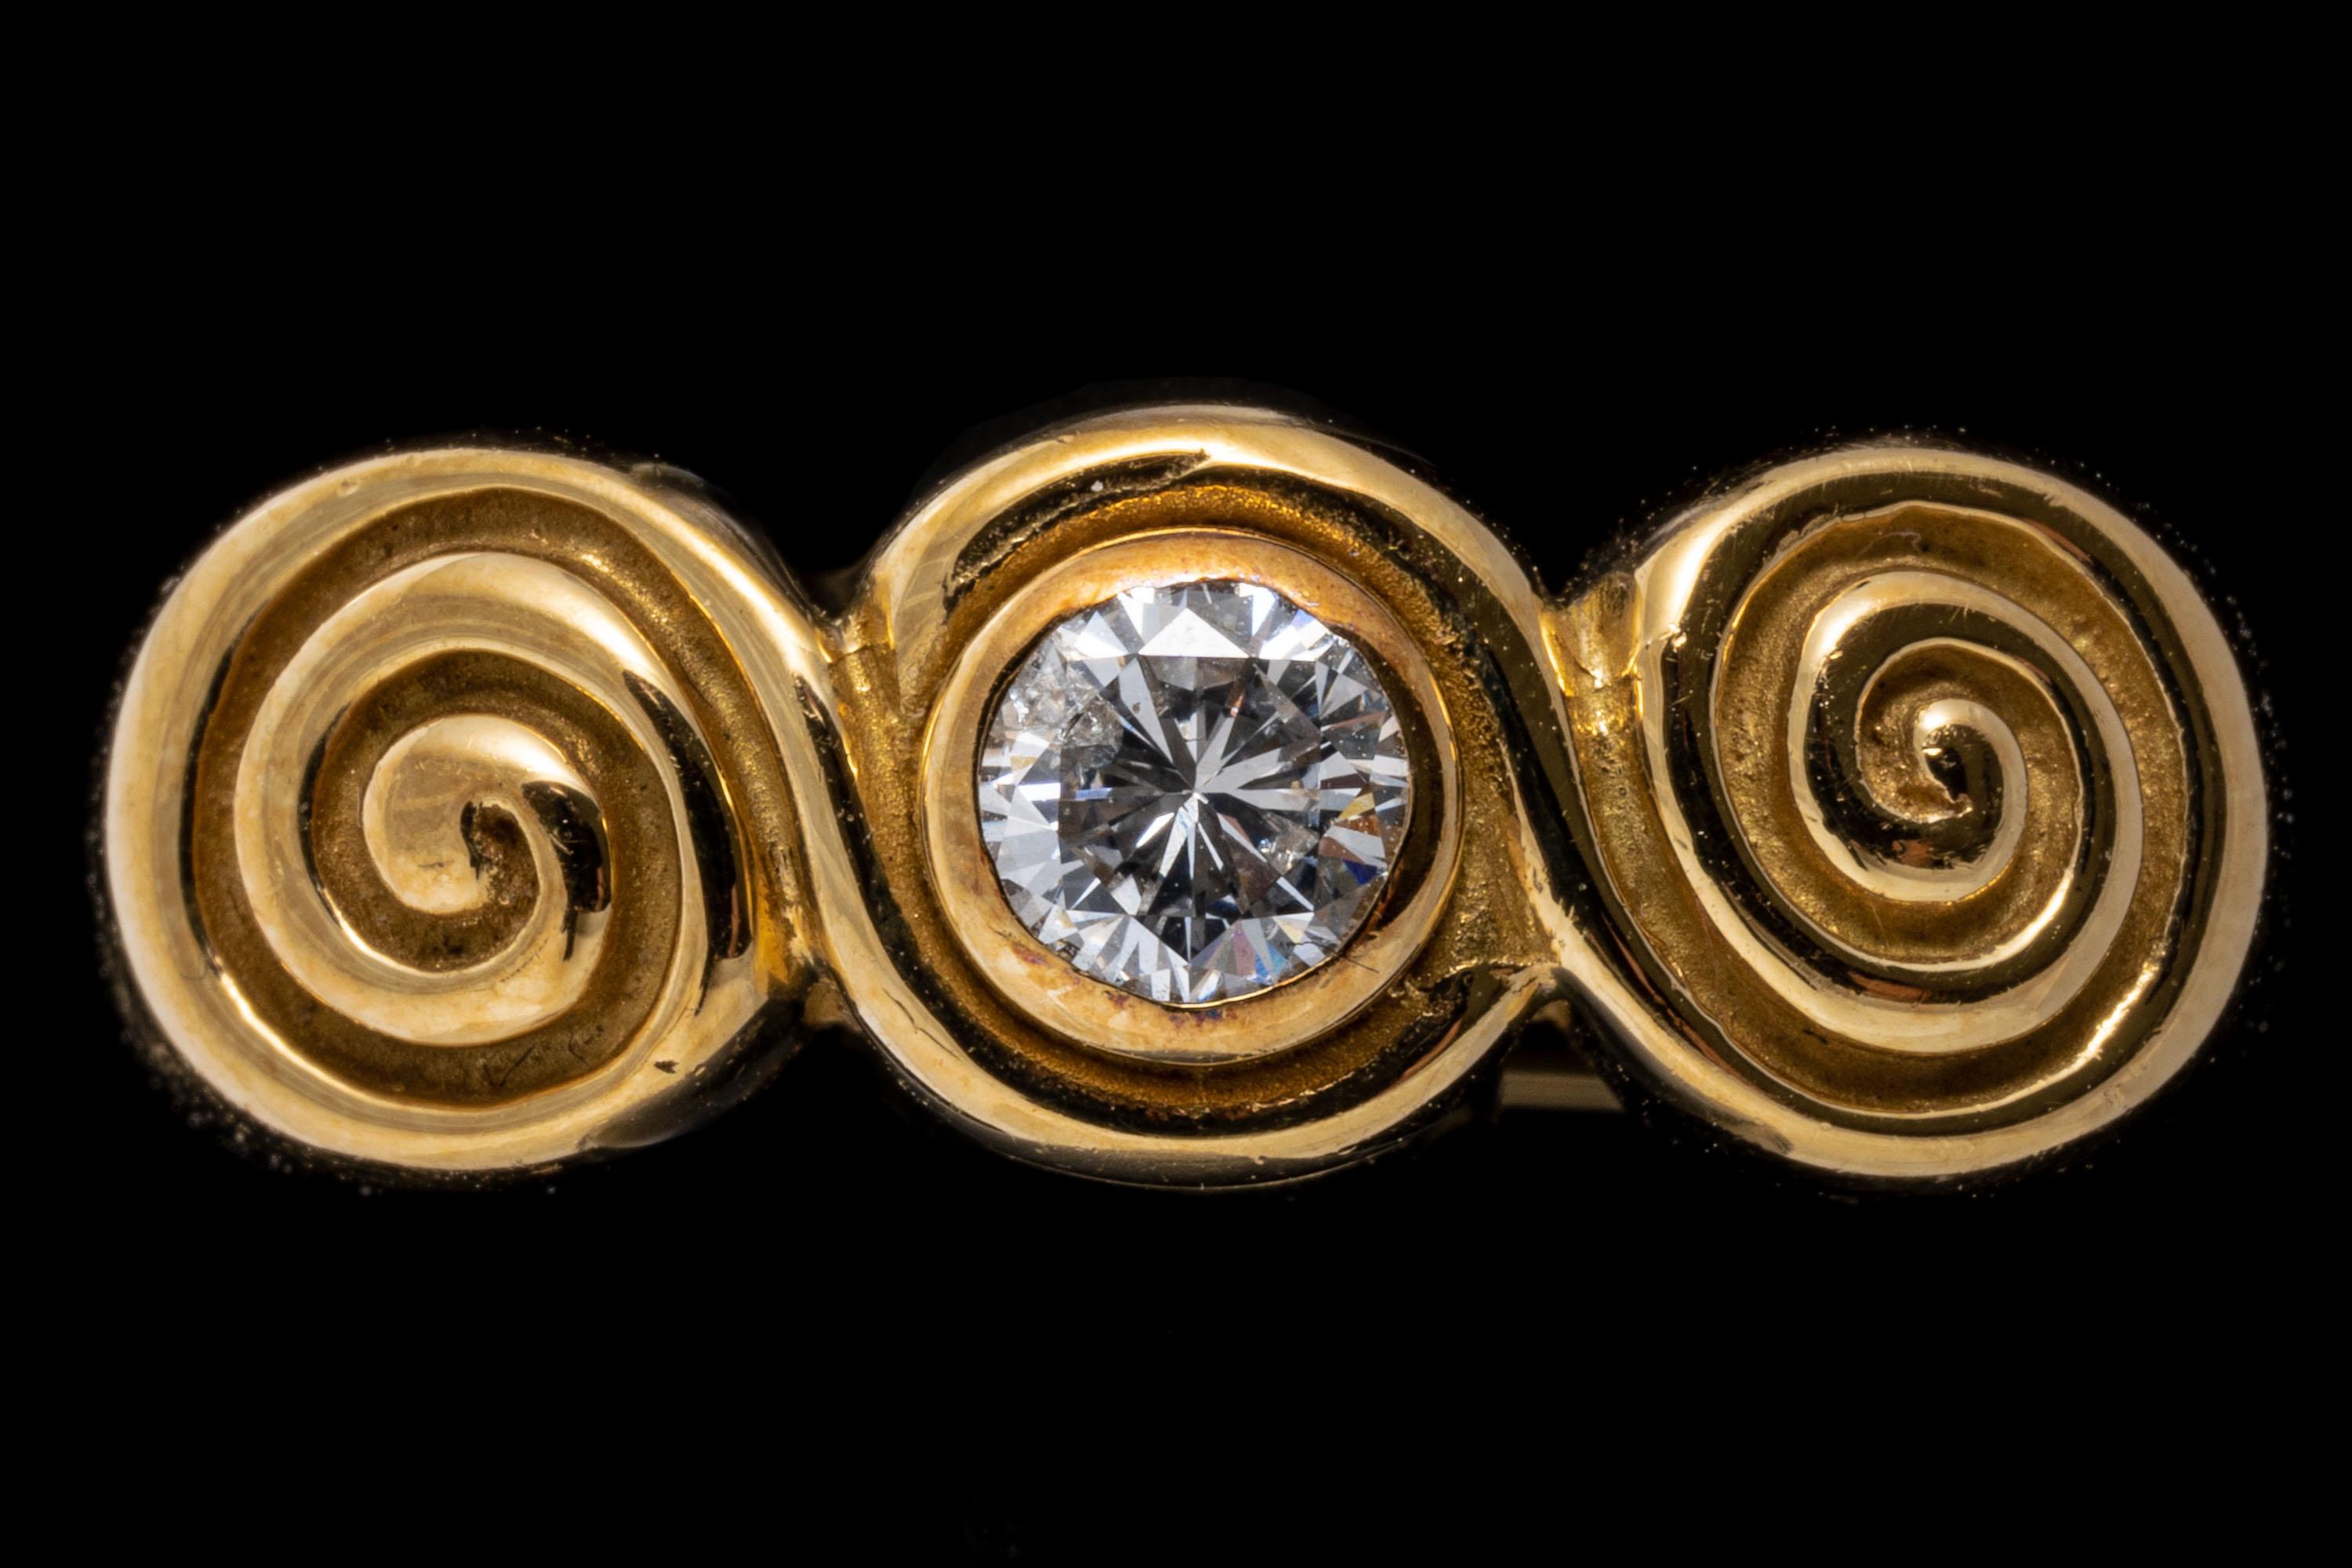 ring aus 18k Gelbgold. Dieser hübsche und einzigartige Ring aus Gelbgold zeigt in der Mitte einen runden Diamanten im Brillantschliff, ca. 0,26 CTS, der in der Lünette gefasst ist. Er wird von zwei gewirbelten Schnecken flankiert und ist mit